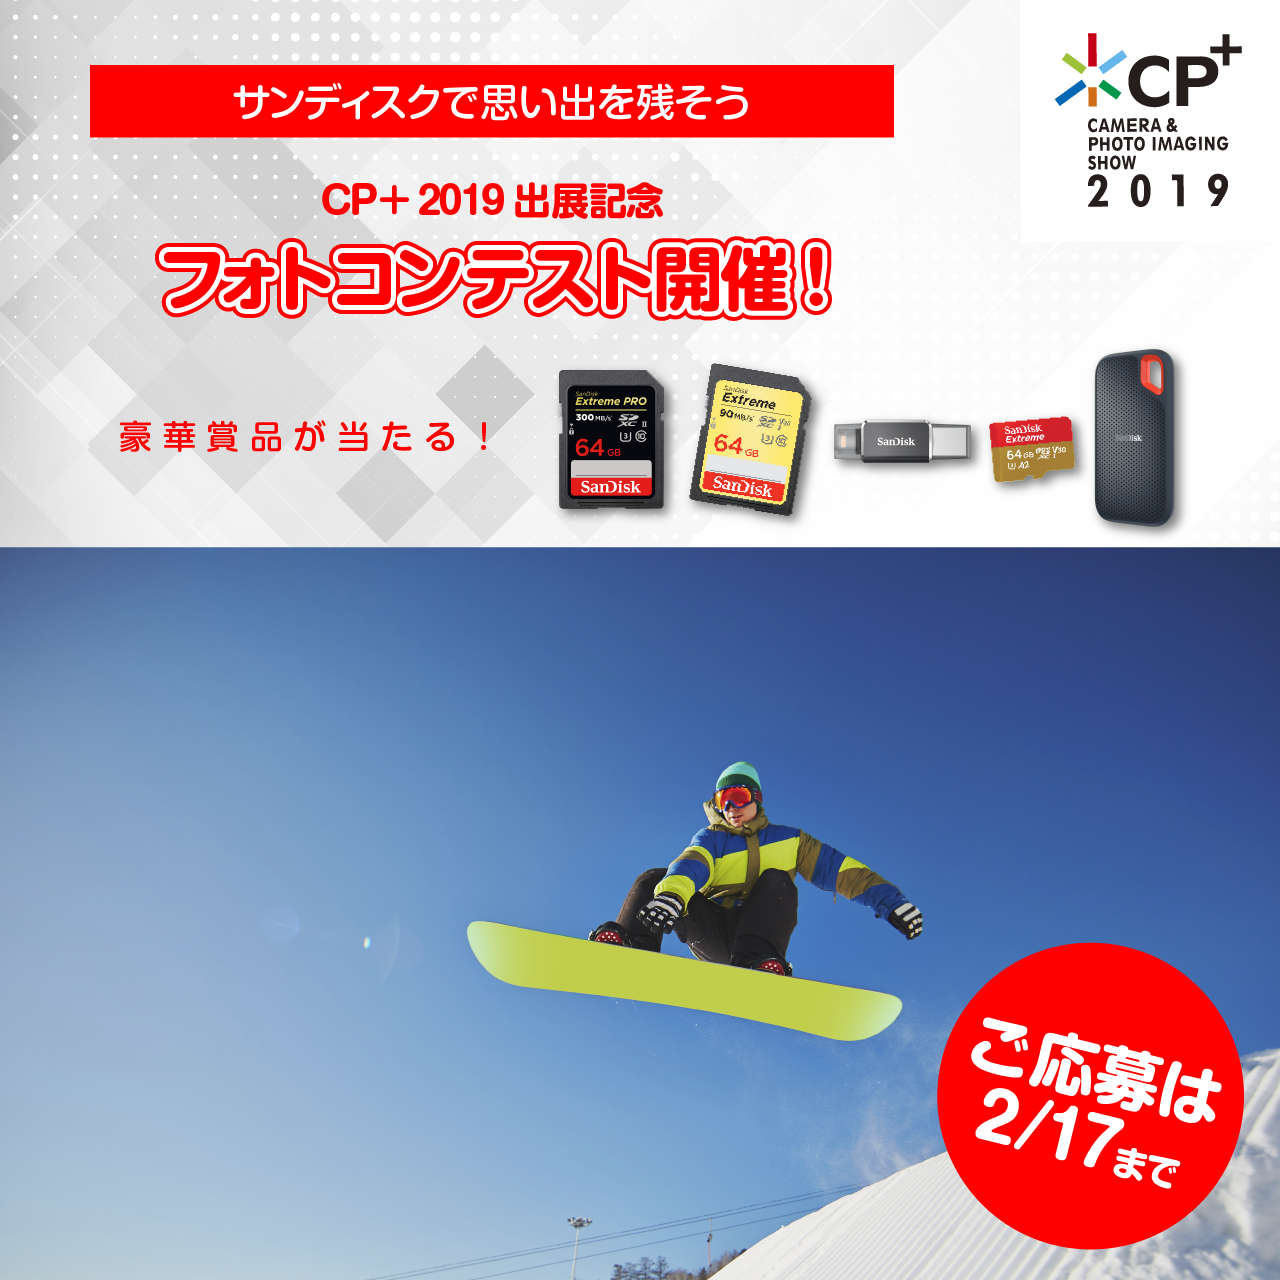 【結果発表】サンディスク CP+2019 出展記念 フォトコンテスト